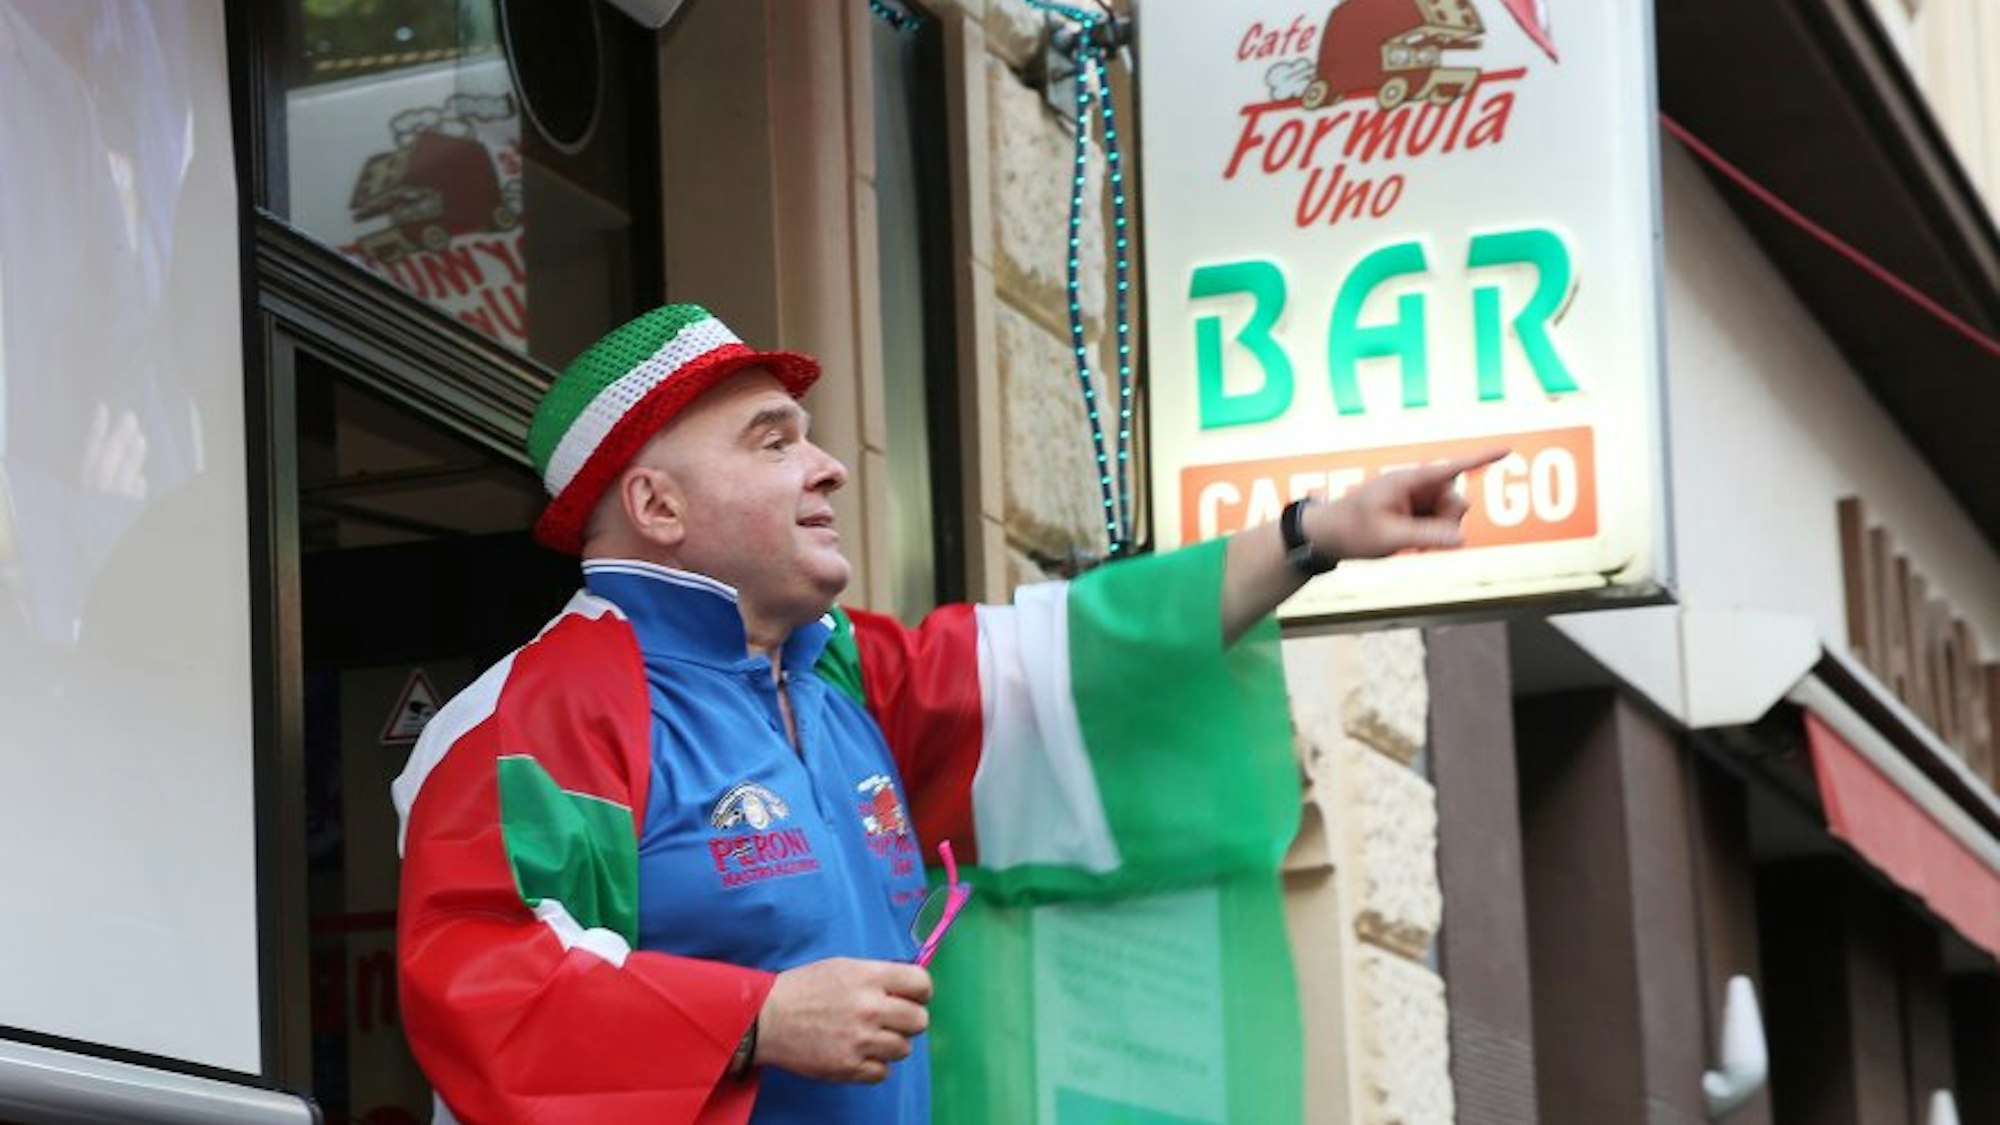 Mann mit Hut in italienischen Farben und Italien-Flagge umgehängt zeigt auf einen Punkt in der Ferne